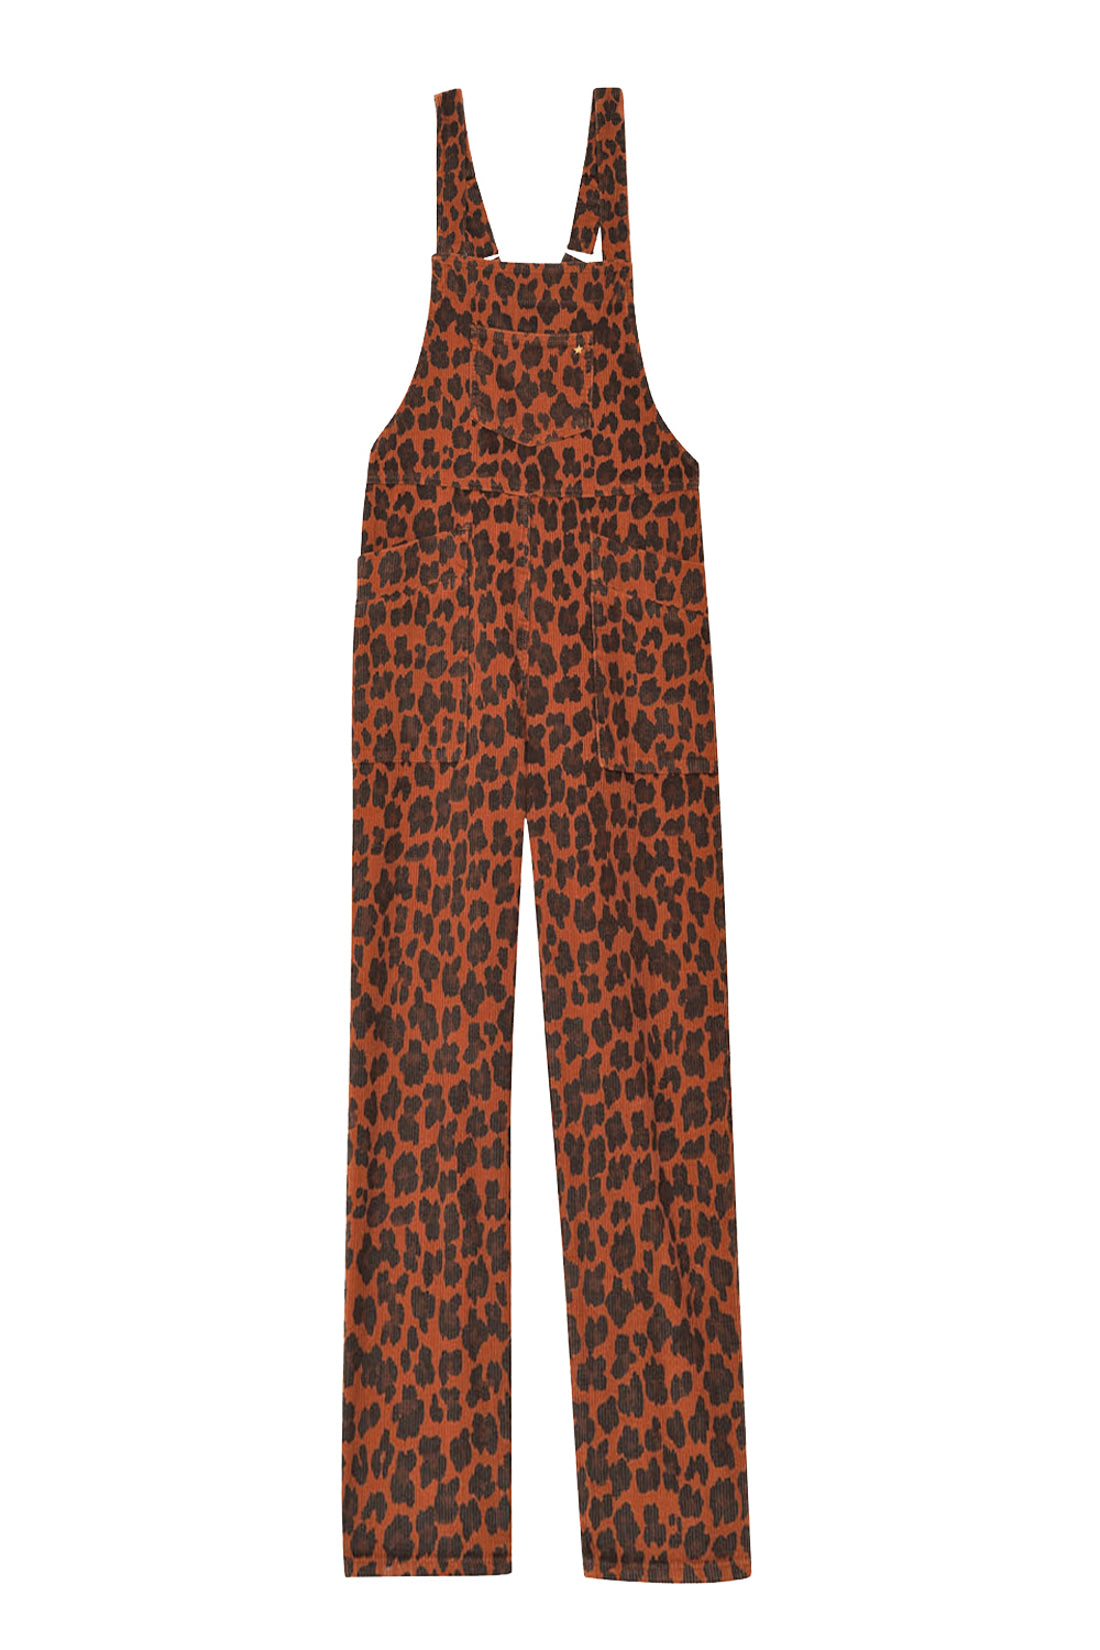 Pantalon Gaston - Leopard